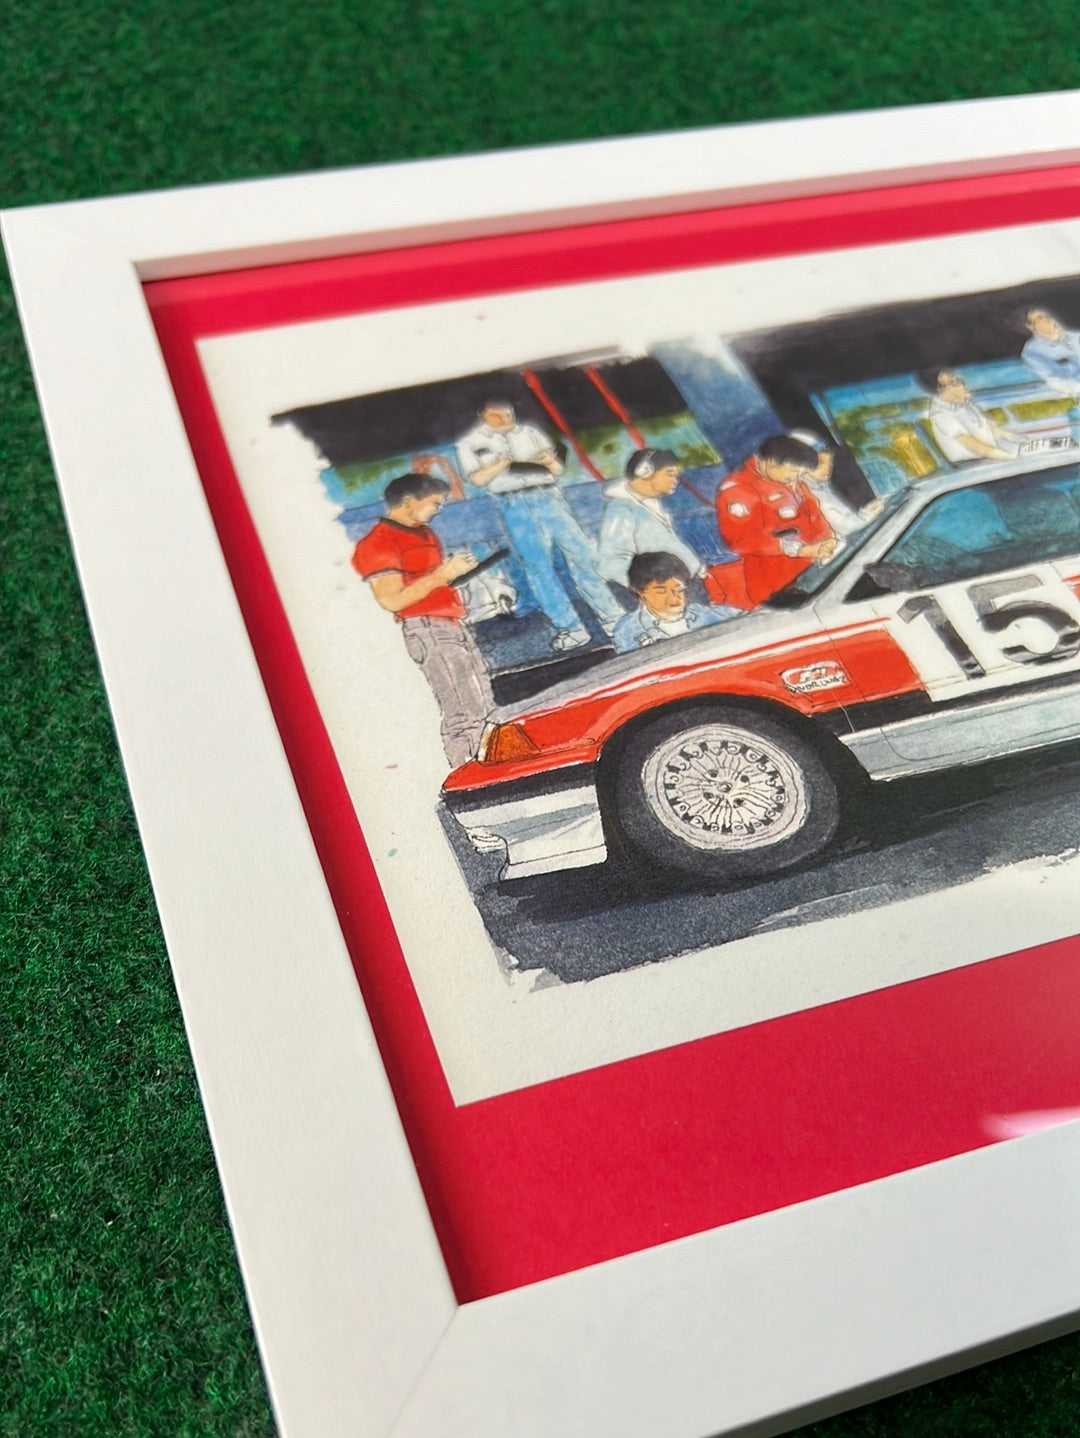 Mugen #15 Honda Civic (Wonder Civic) & Crew Framed Print